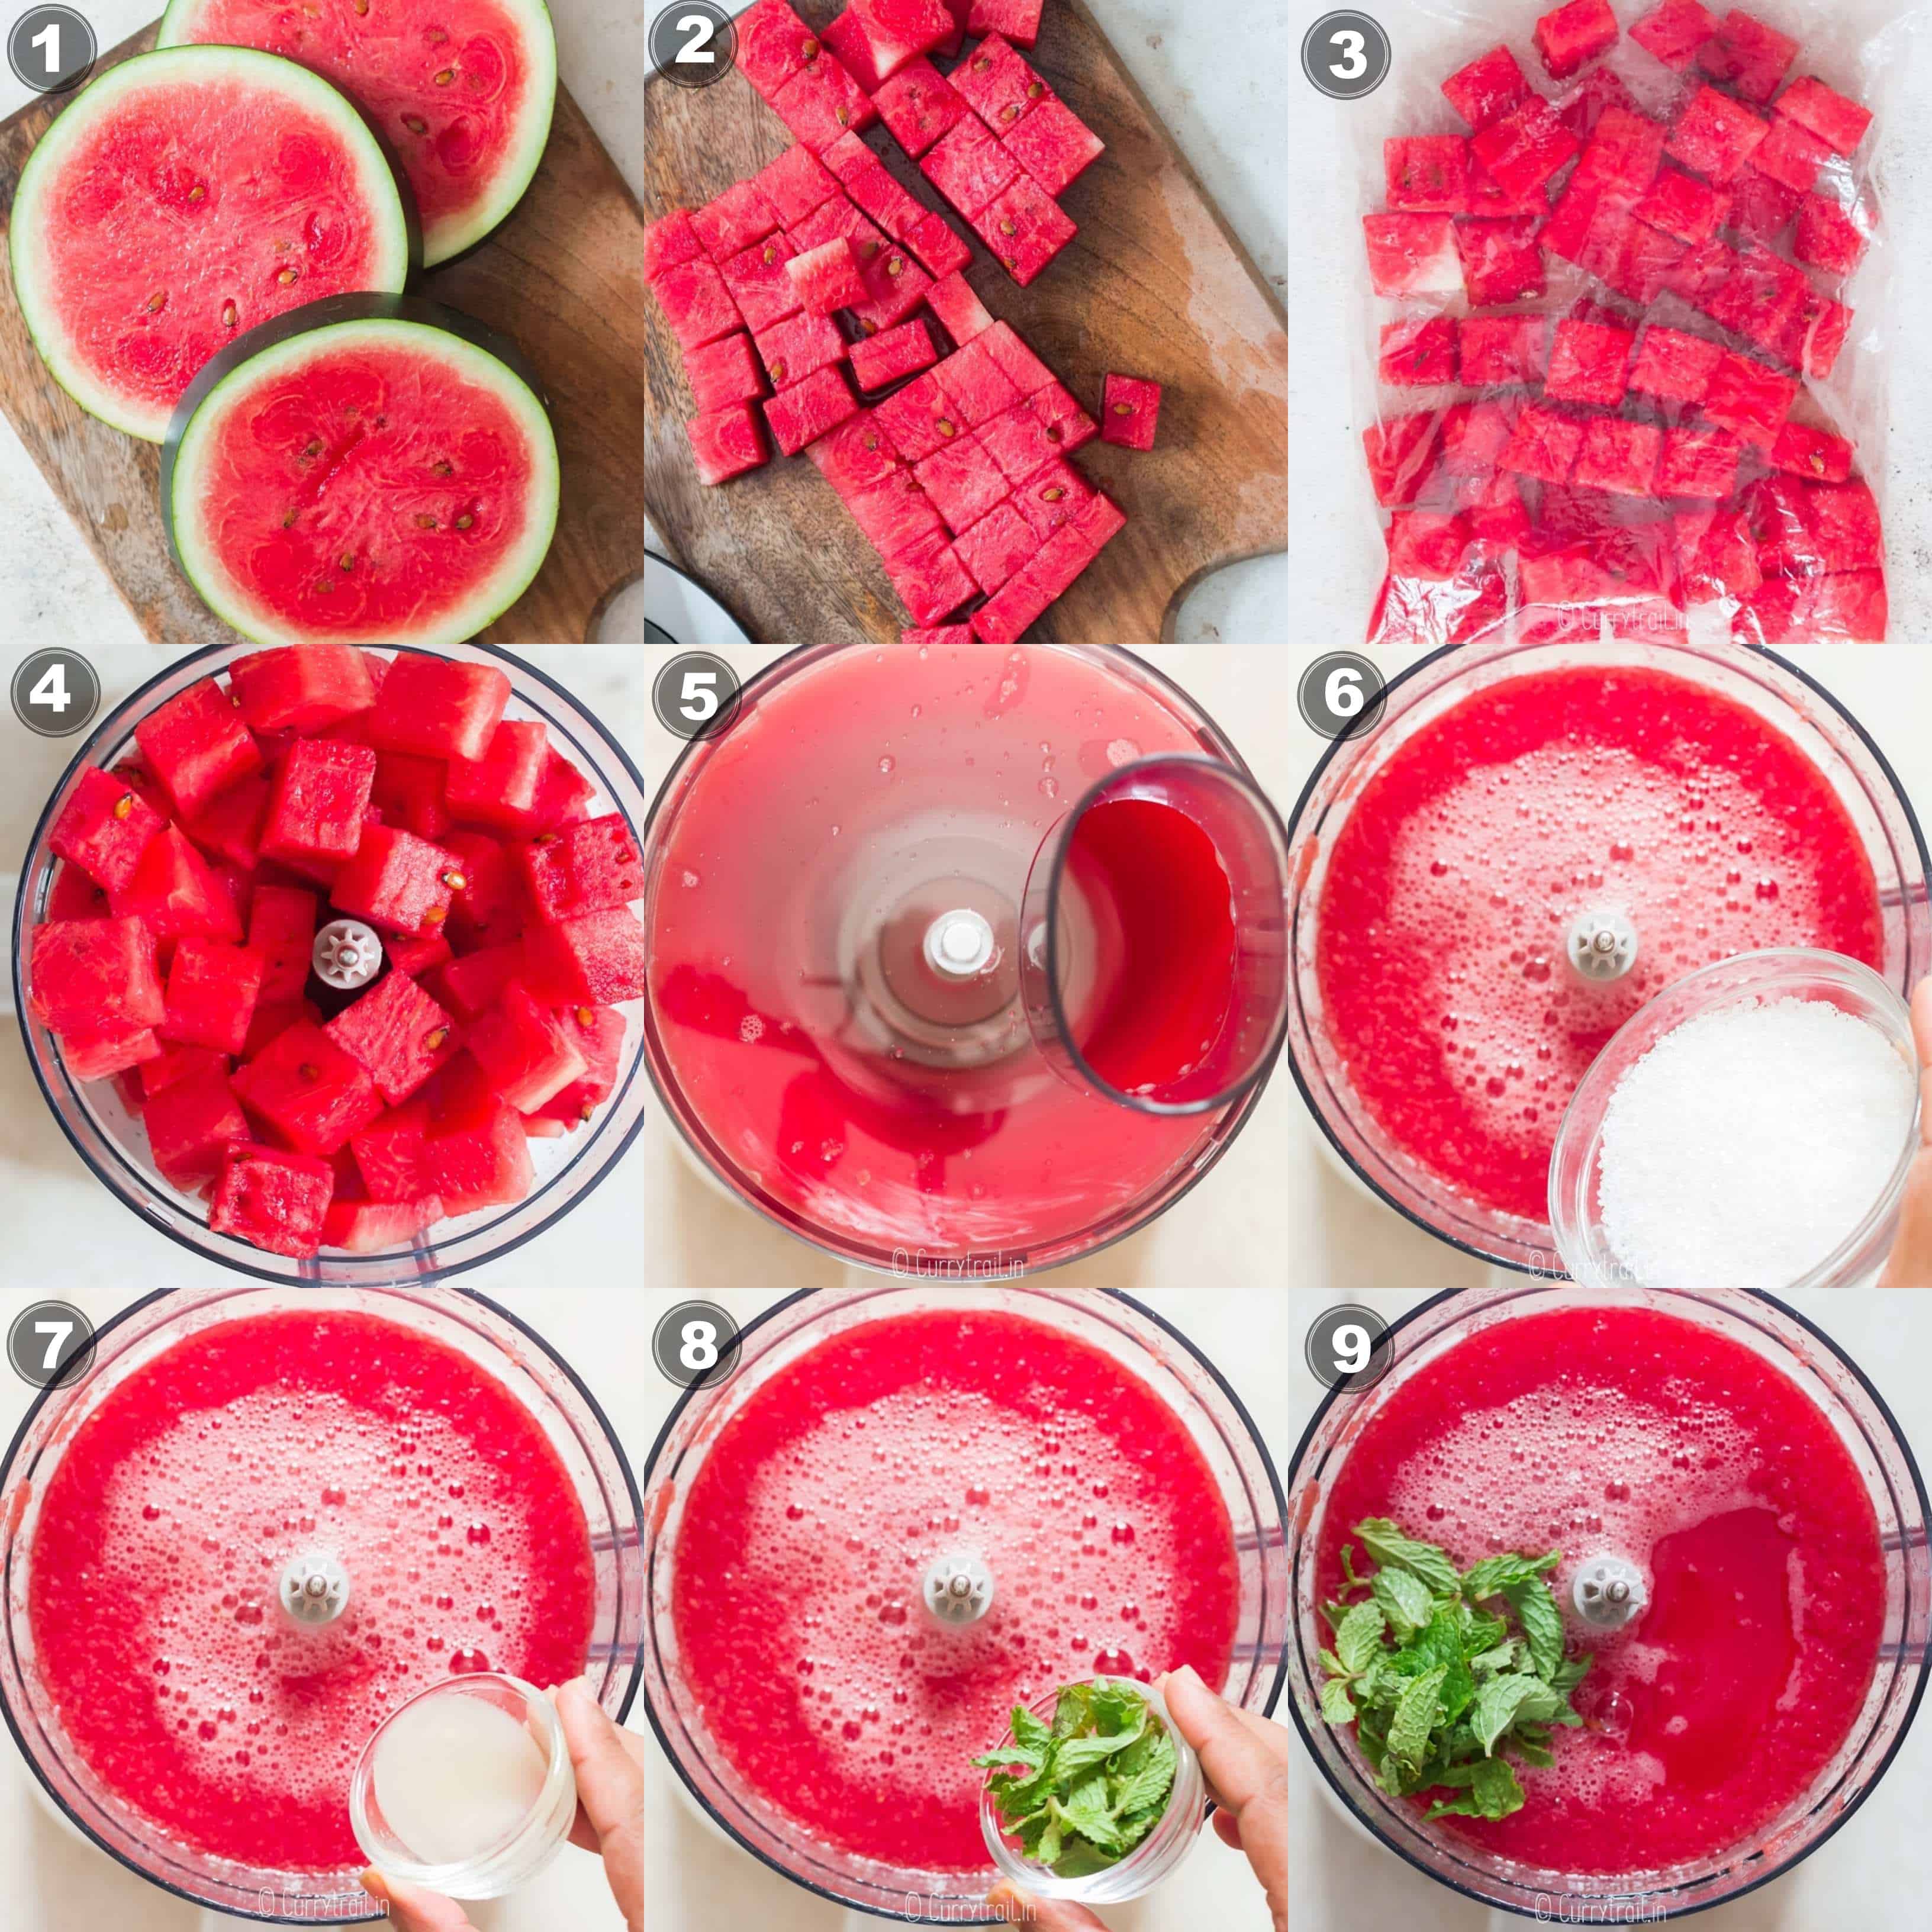 watermelon granita recipes step by step 